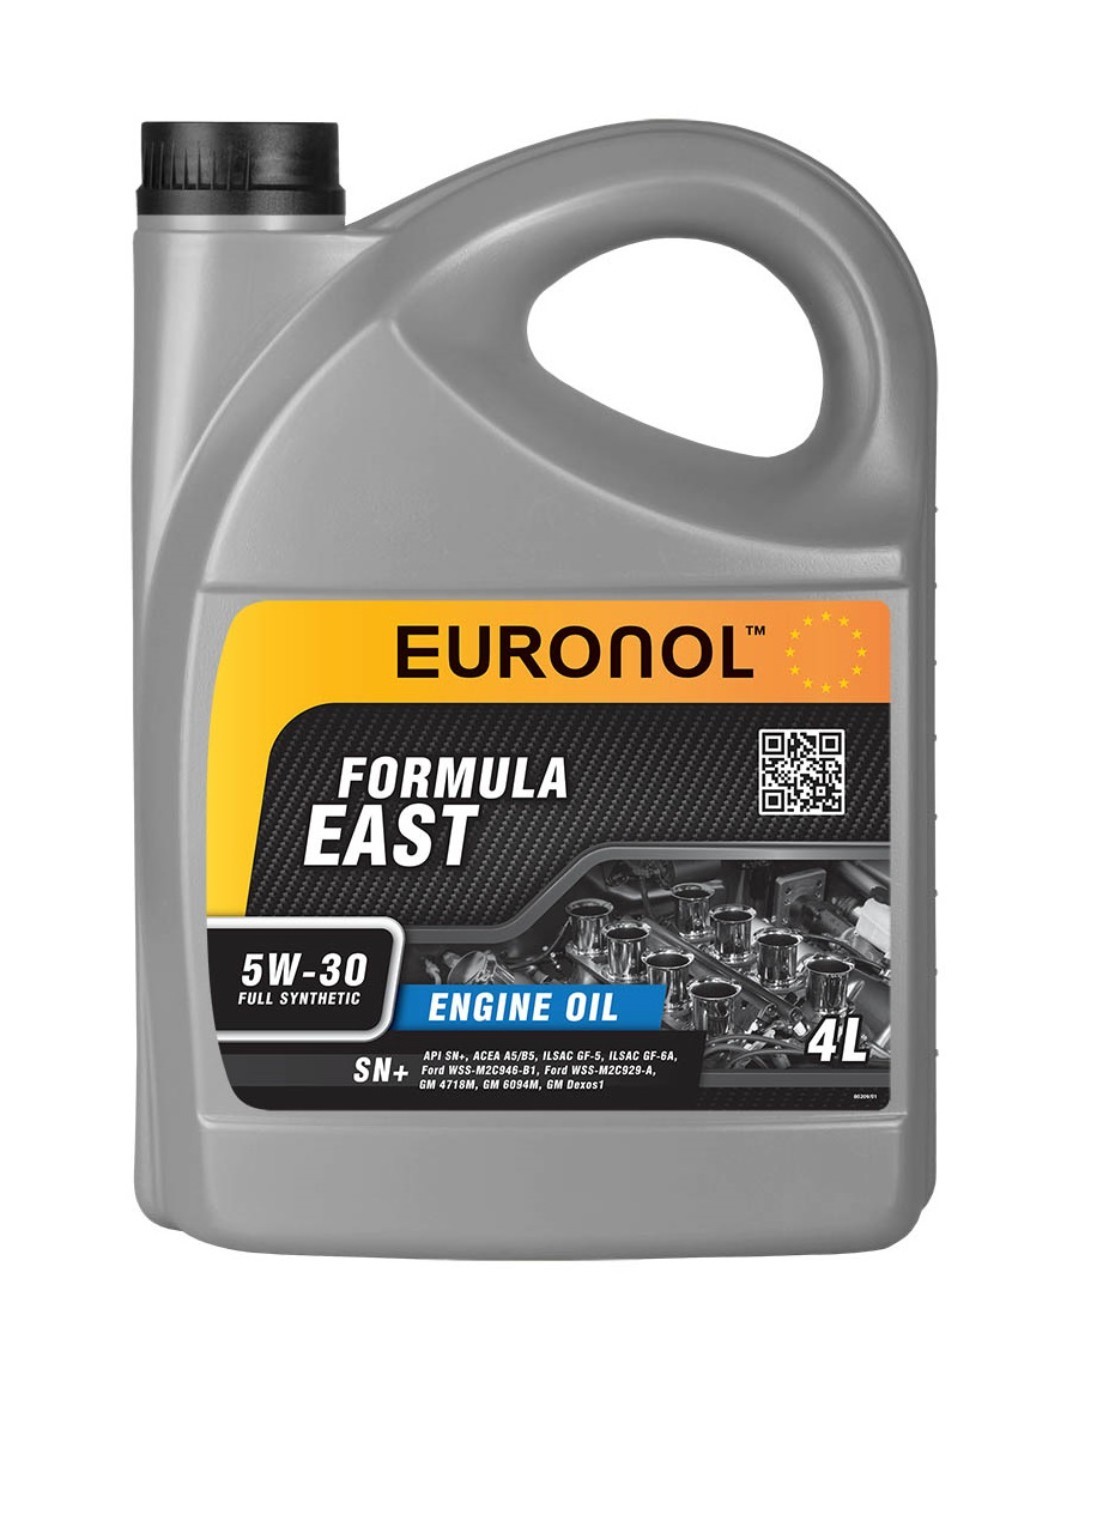 фото Моторное масло euronol east formula 5w-30 ilsac gf-5 4l